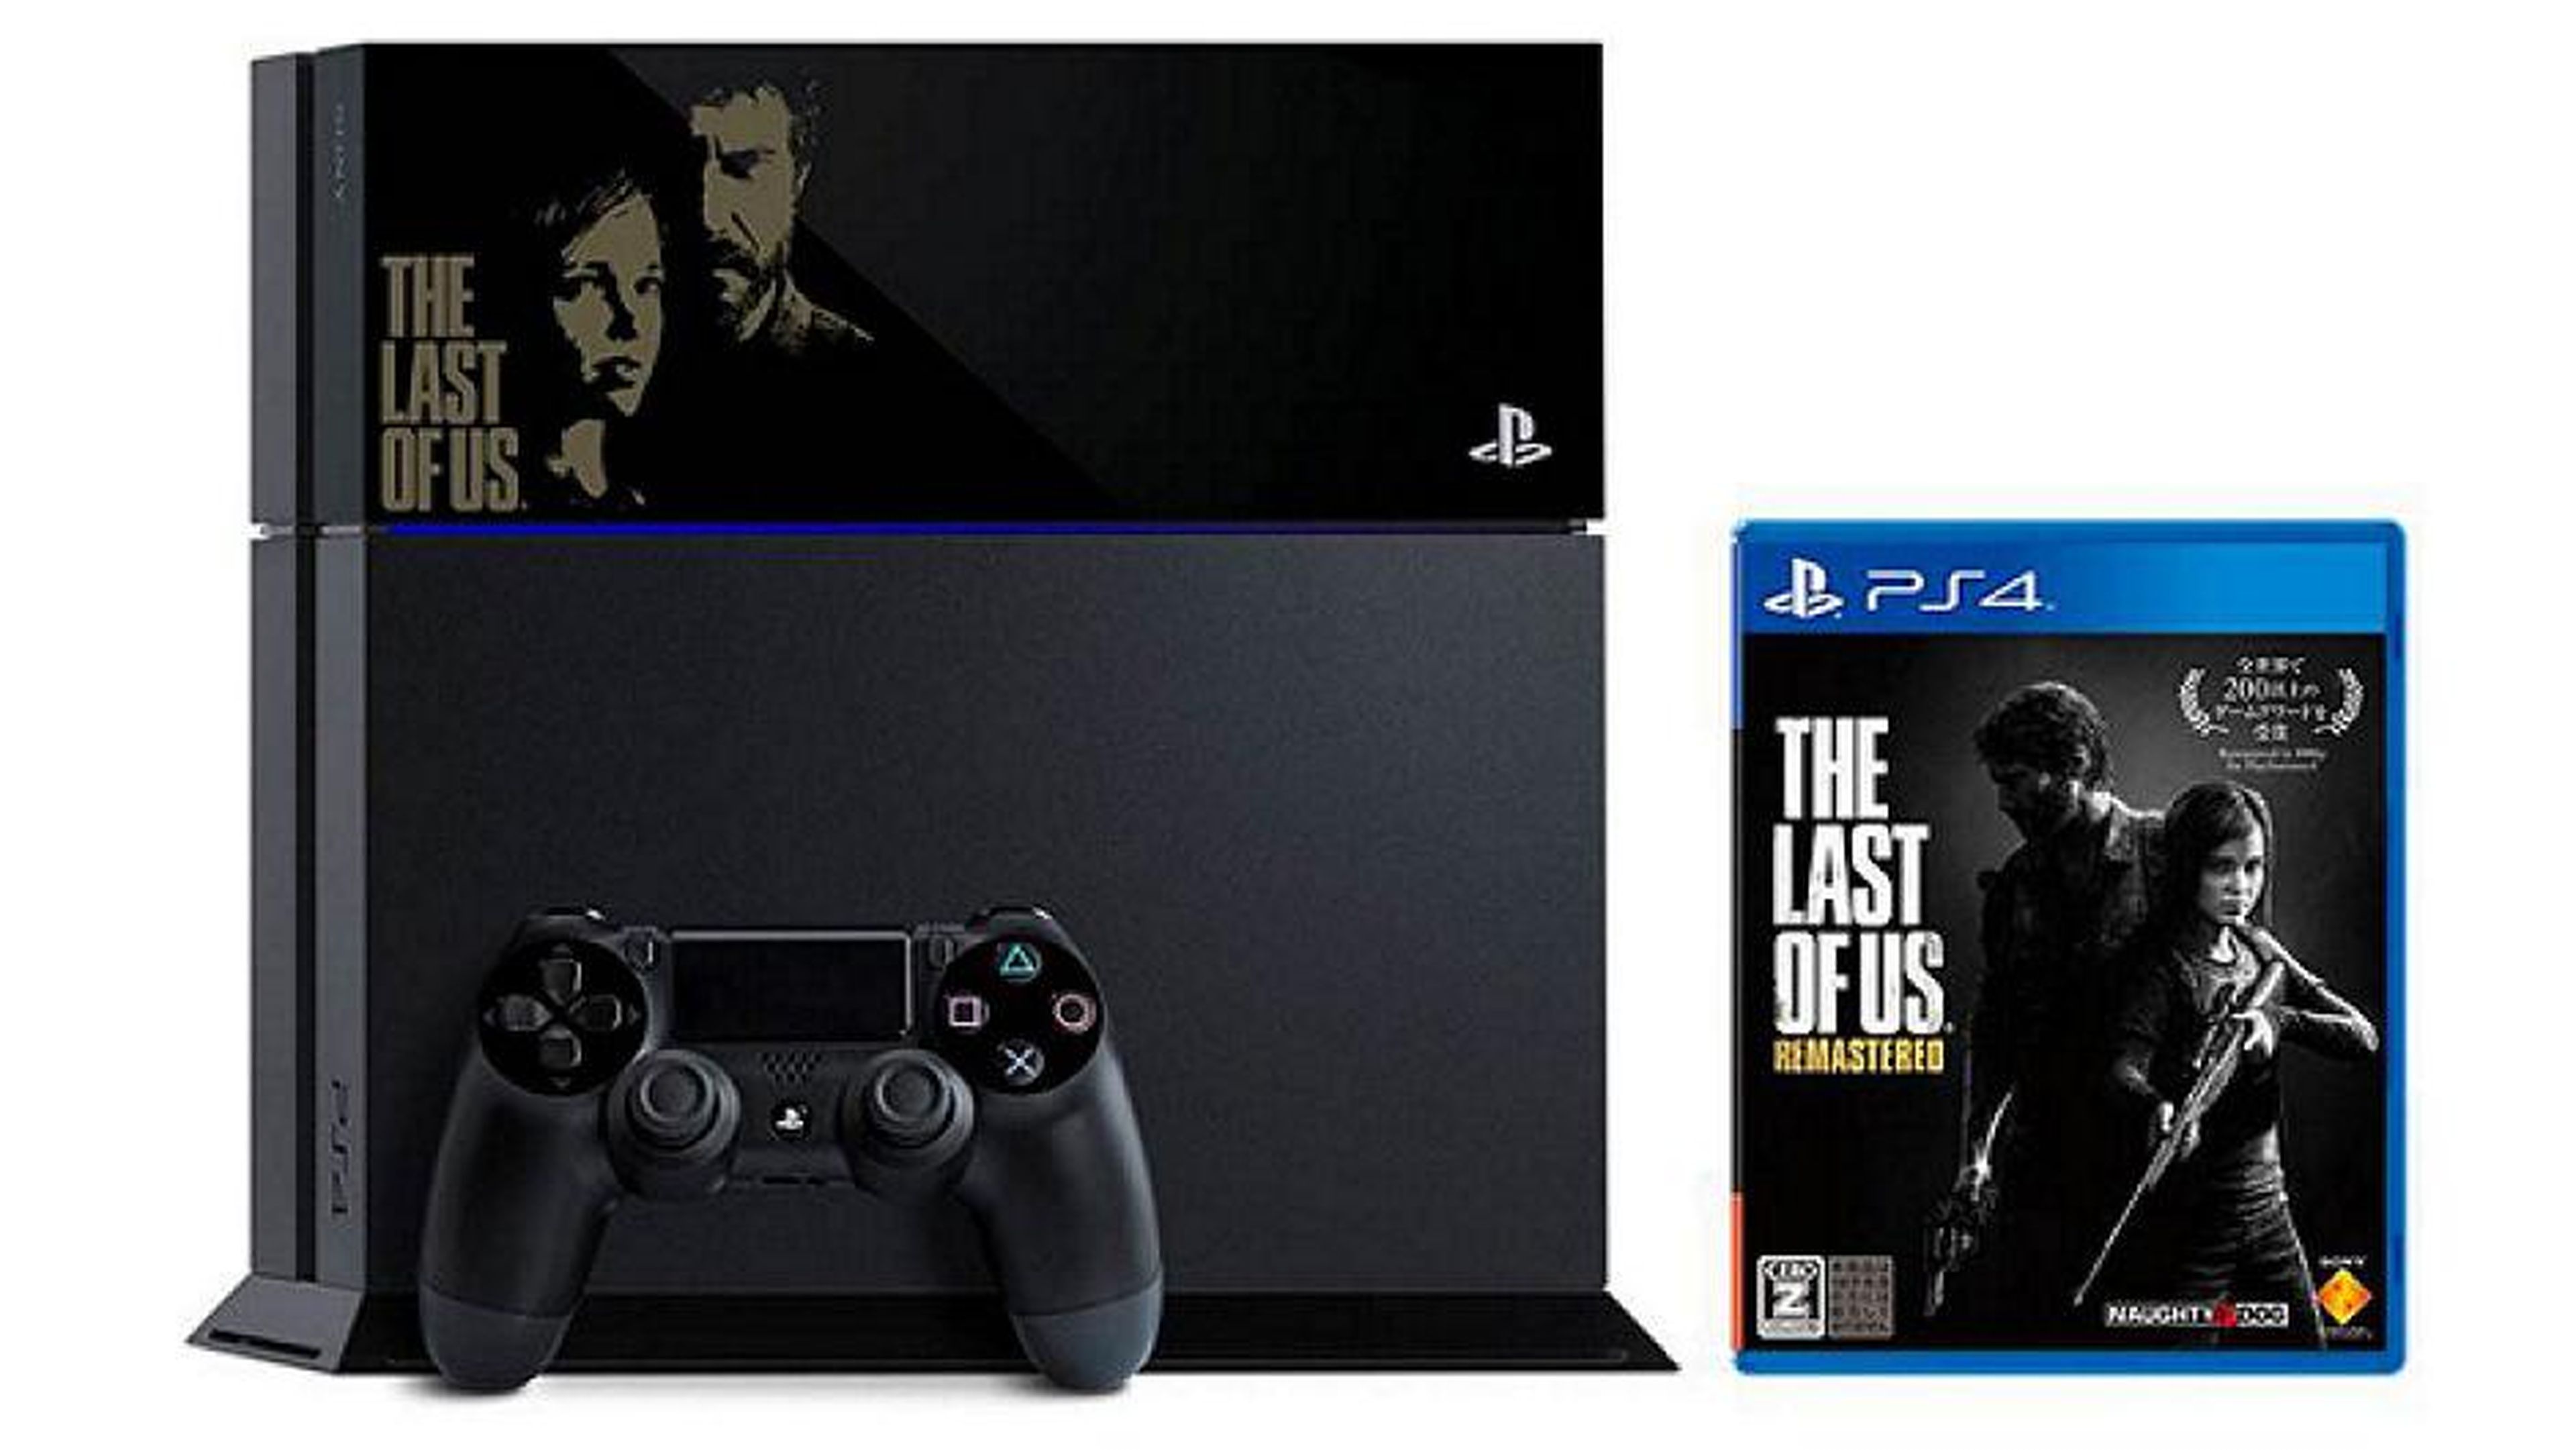 Habrá ediciones limitadas de PS4 basadas en Destiny y The Last of Us en Japón